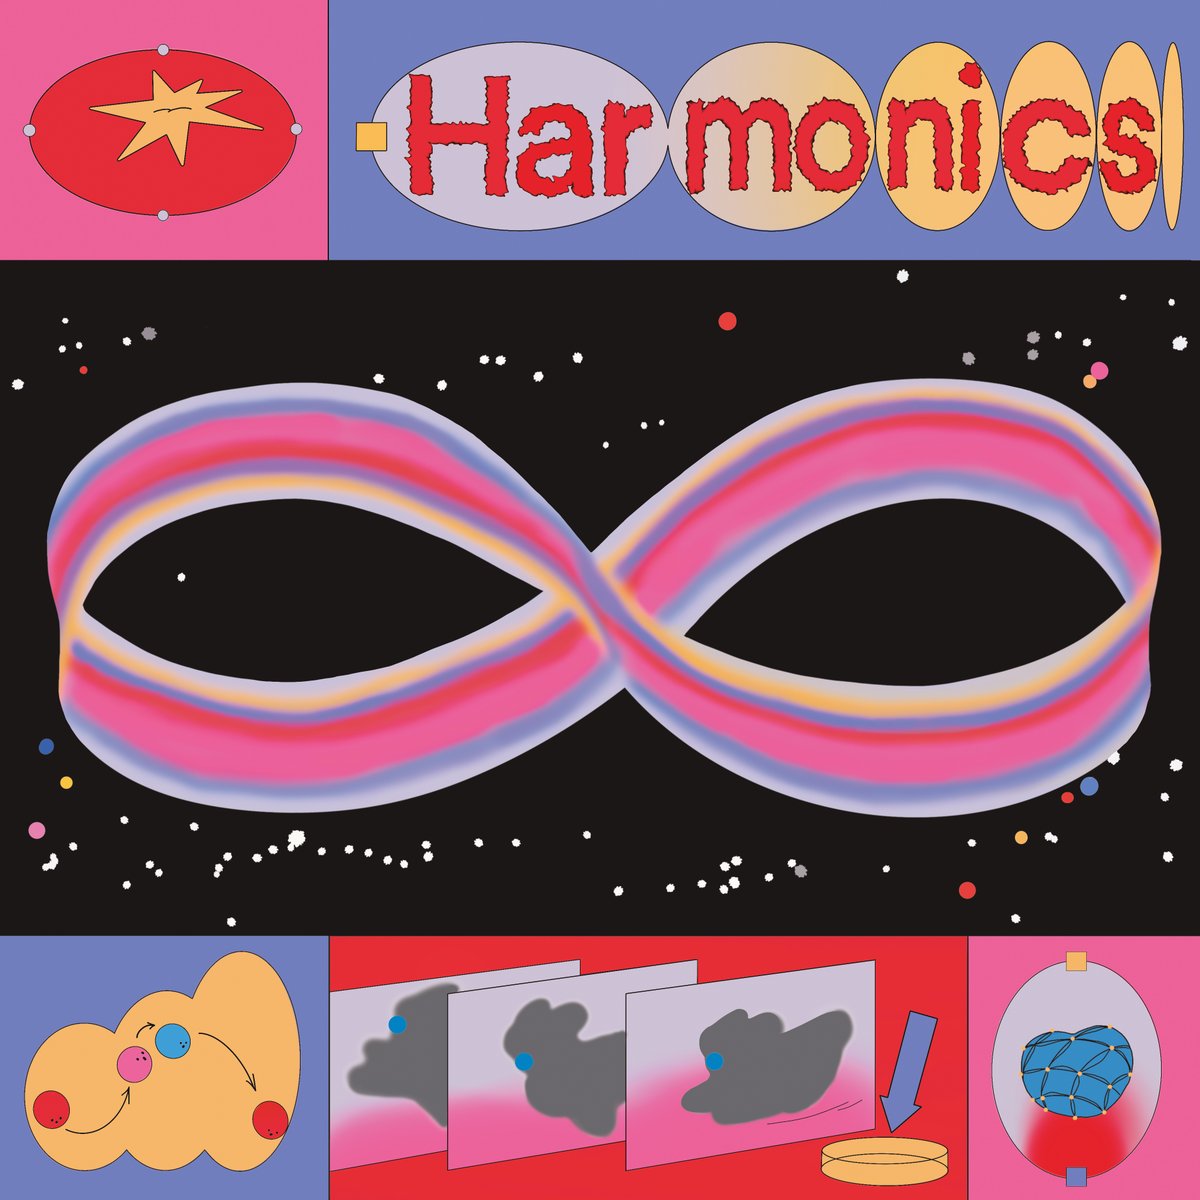 'Harmonics' le nouvel album de @JoeHotChip (Joe Goddard) sortira le 12 juillet ♾️ ➡️ joegoddard.ffm.to/harmonics Écoutez dès maintenant son nouveau single 'Moments Die (featuring @barrieshhh )' ➡️ joegoddard.ffm.to/momentsdie